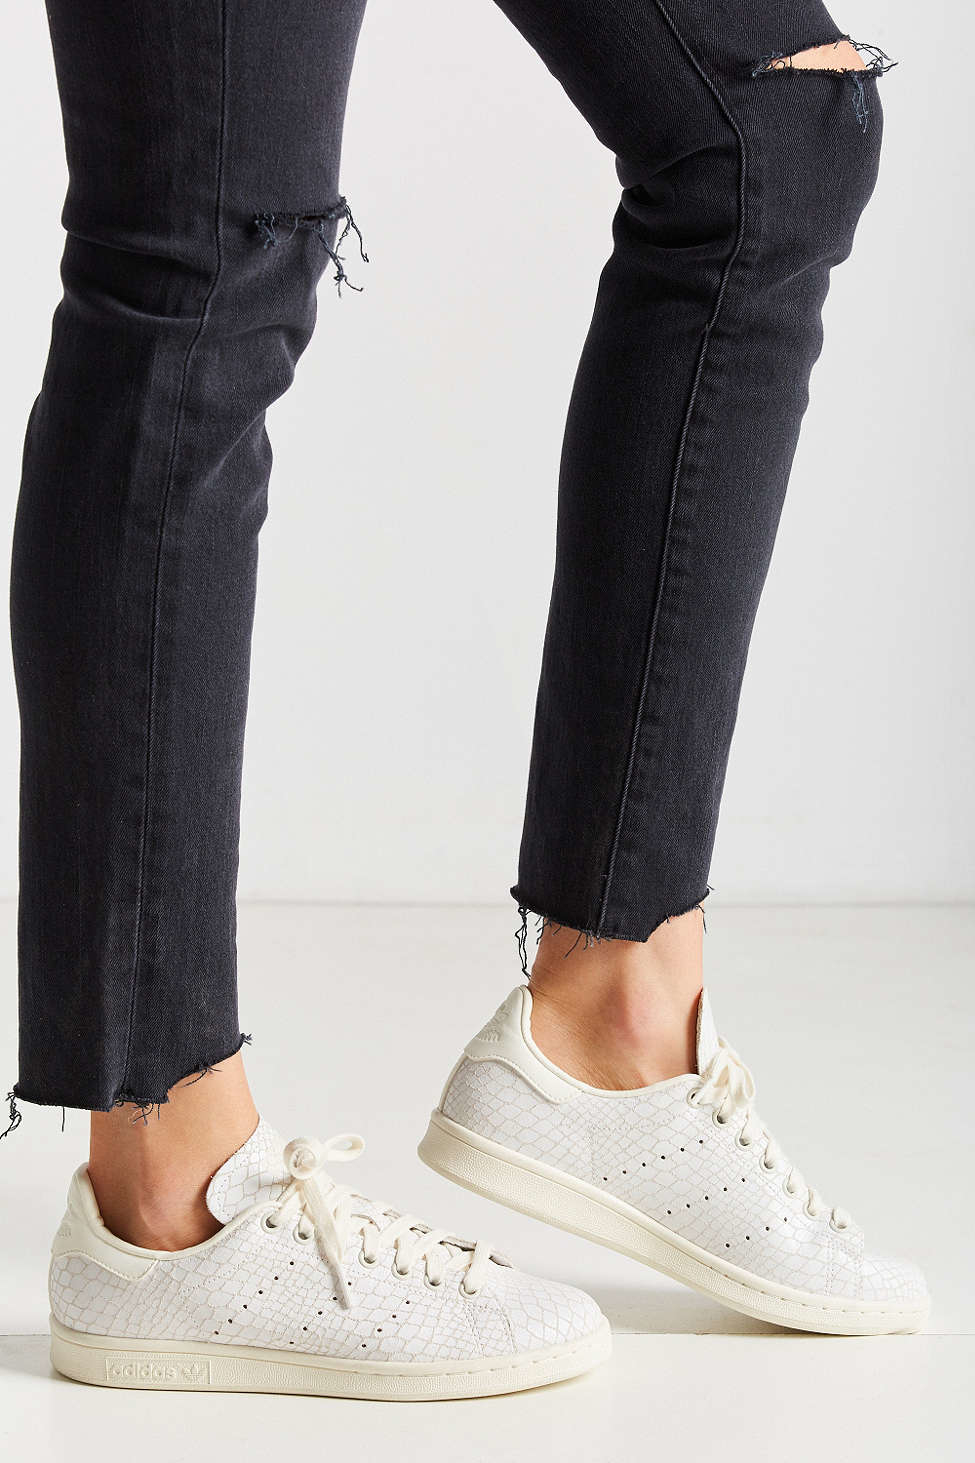 voor daar ben ik het mee eens sector adidas Originals Stan Smith Croc-Embossed Leather Low-Top Sneakers in White  | Lyst